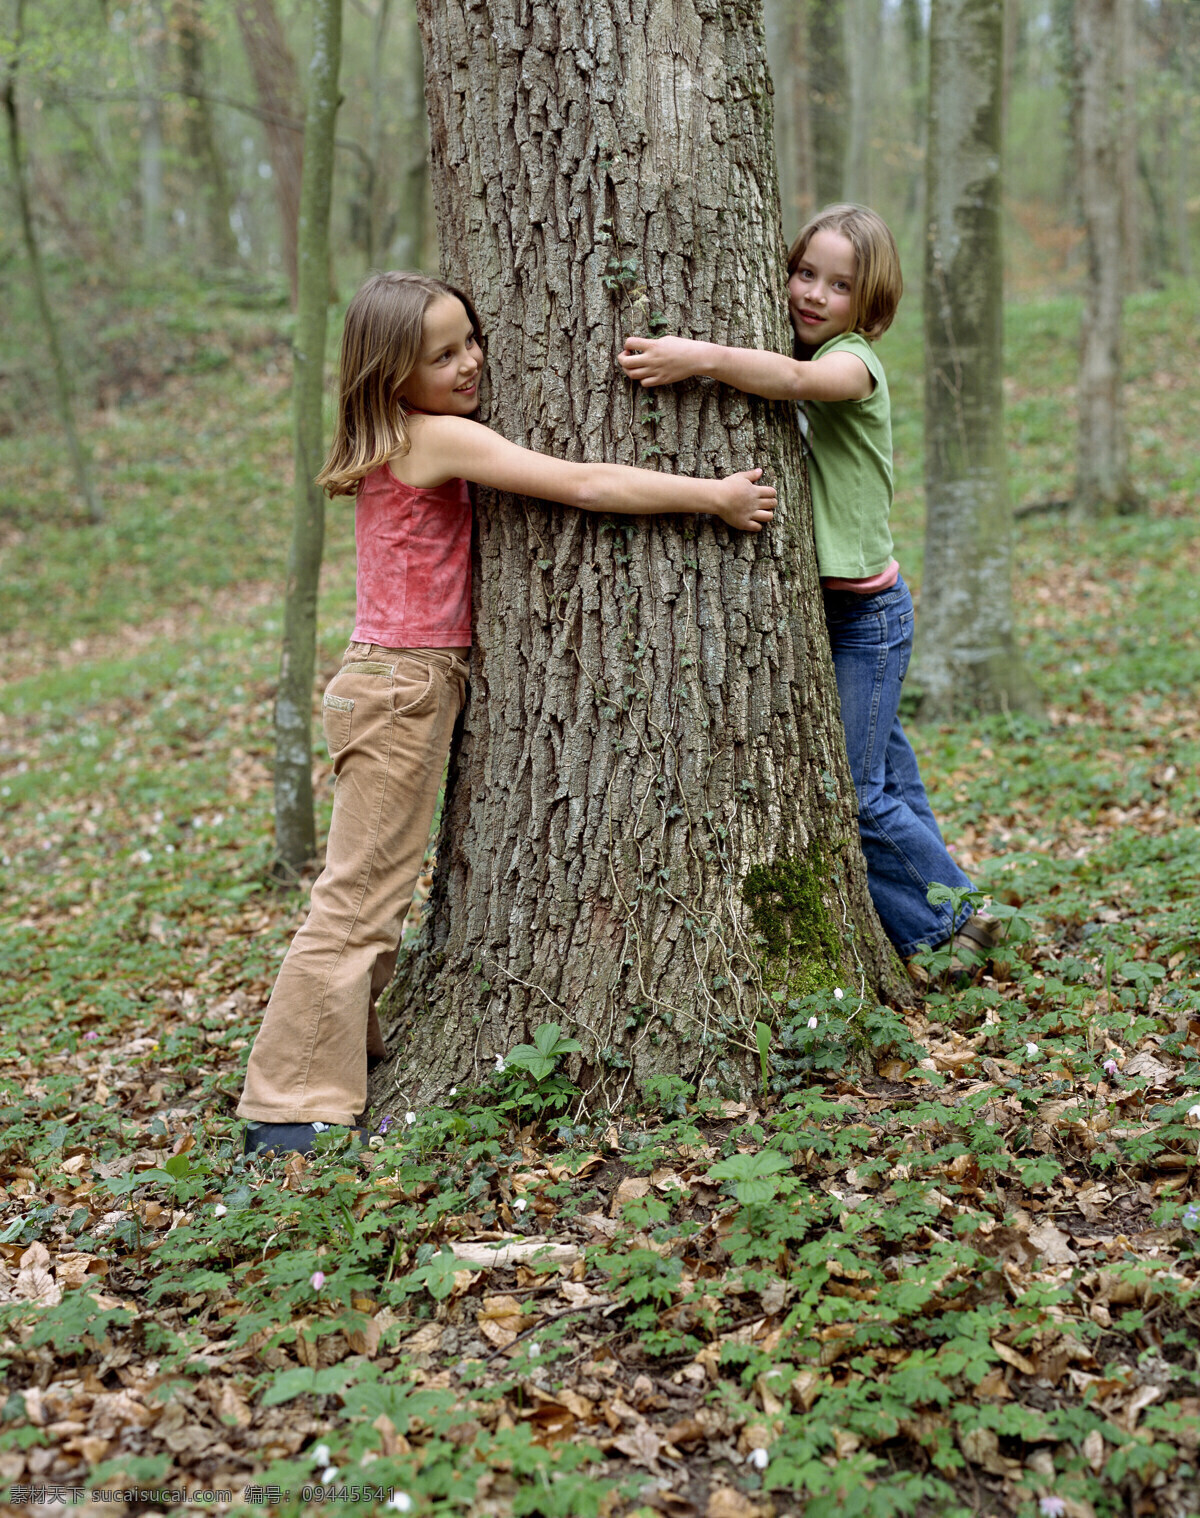 抱 大树 小女孩 户外儿童 户外活动 外国儿童 可爱 小孩儿 孩子 小朋友 郊游 树林 森林 抱着 树干 儿童图片 人物图片